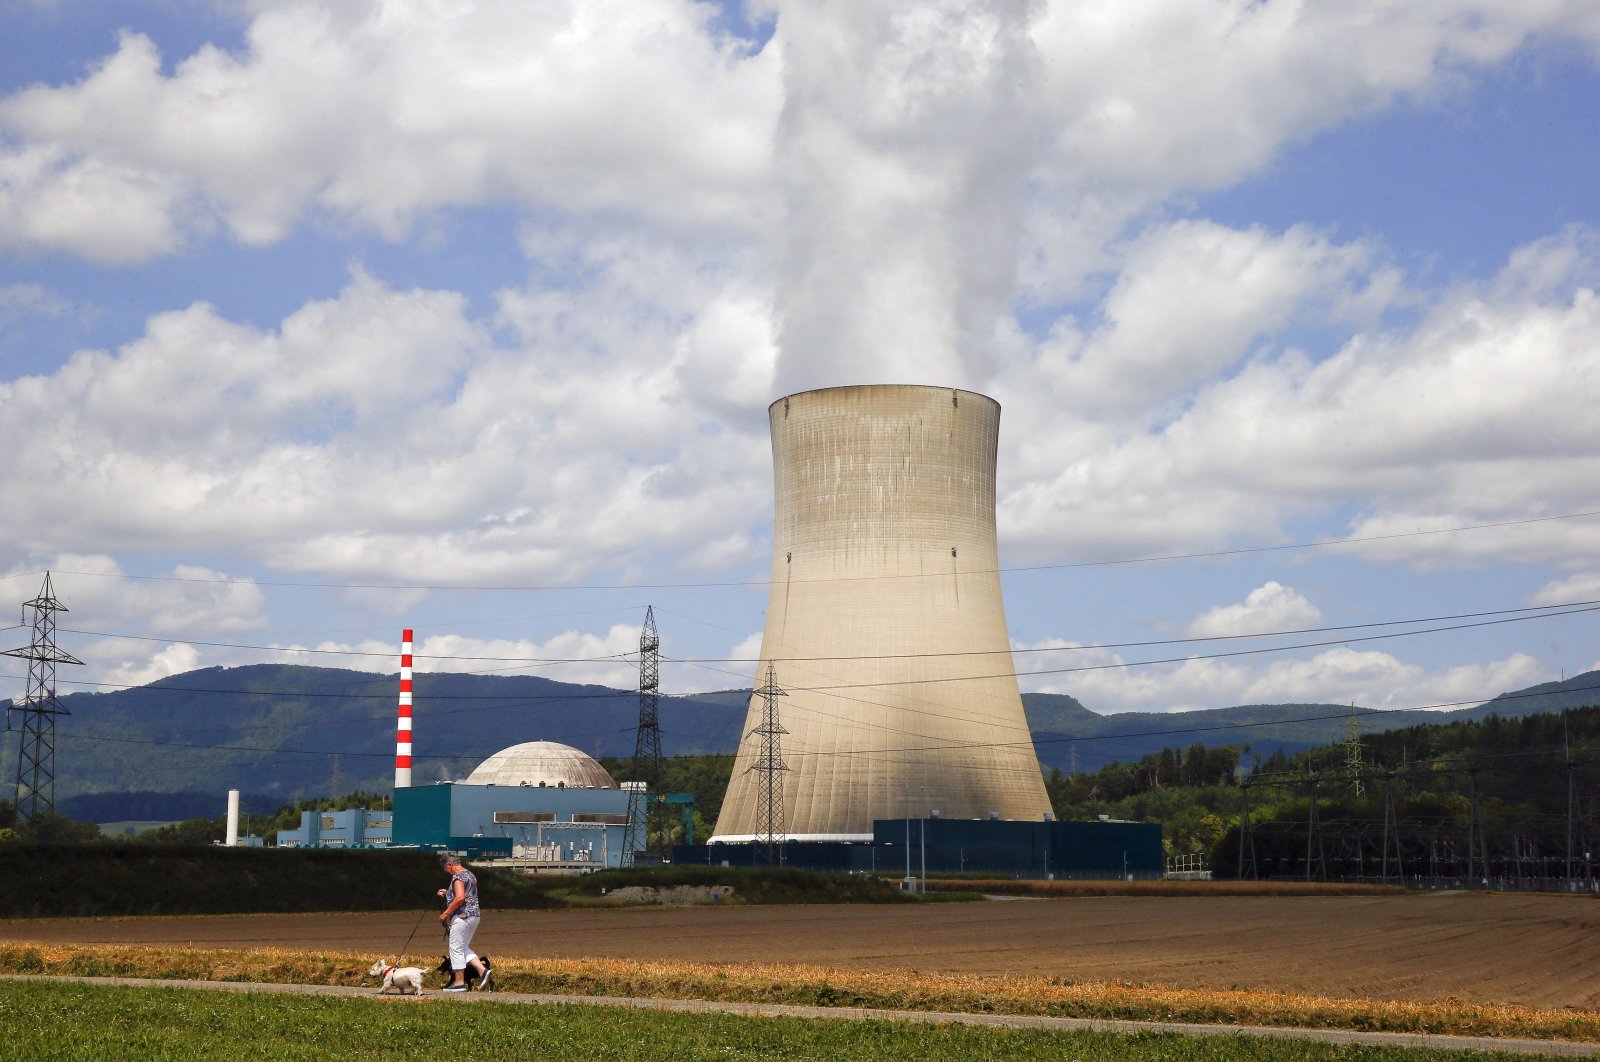 Türkiye dalam pembicaraan dengan AS untuk reaktor nuklir kecil: Laporkan